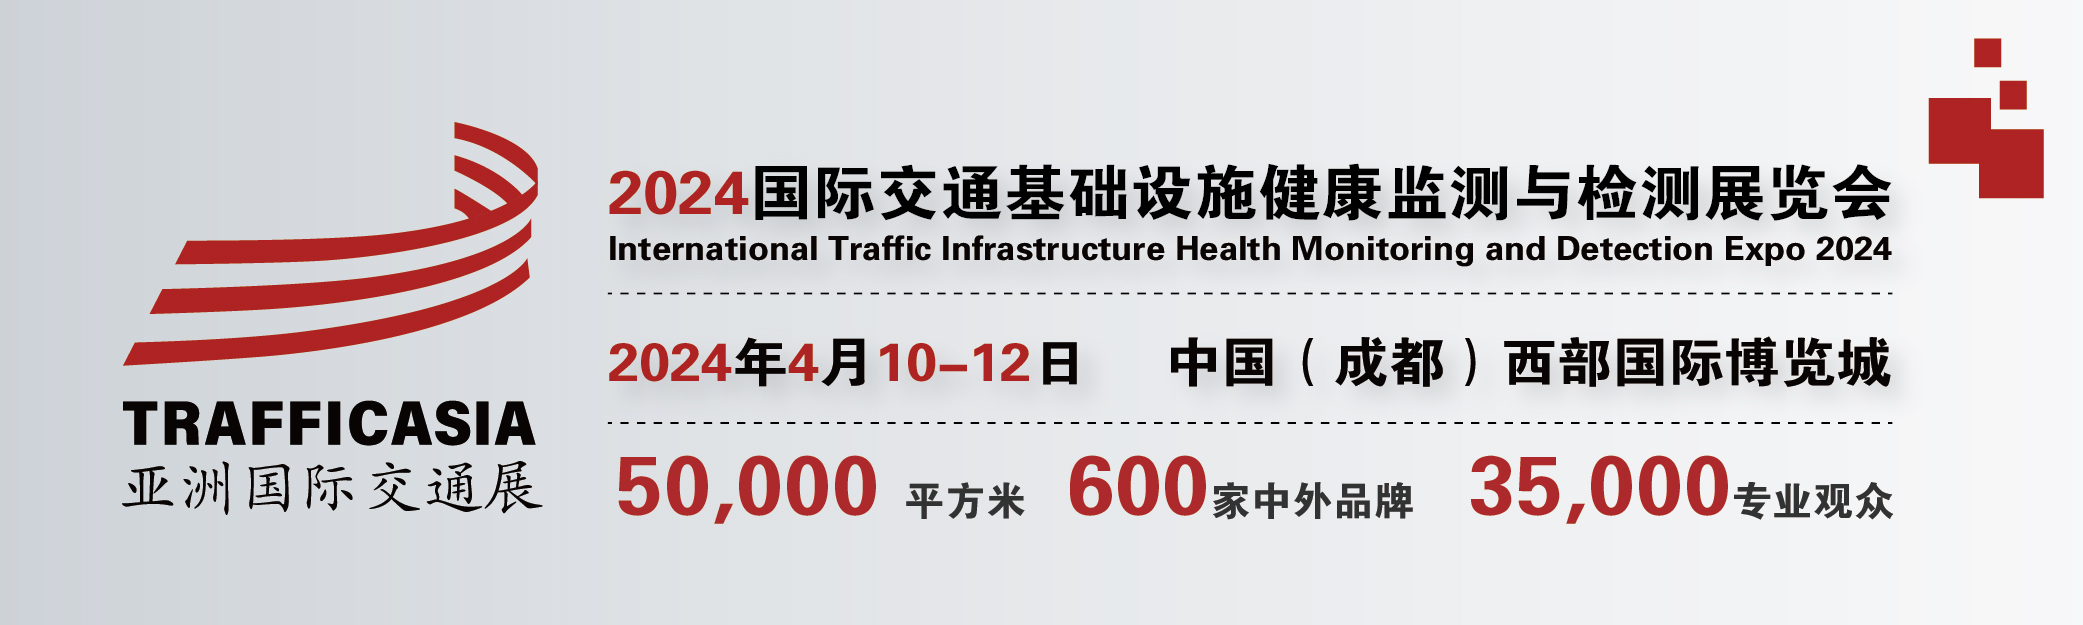 2024中国(成都)国际交通基础设施健康监测与检测展览会”